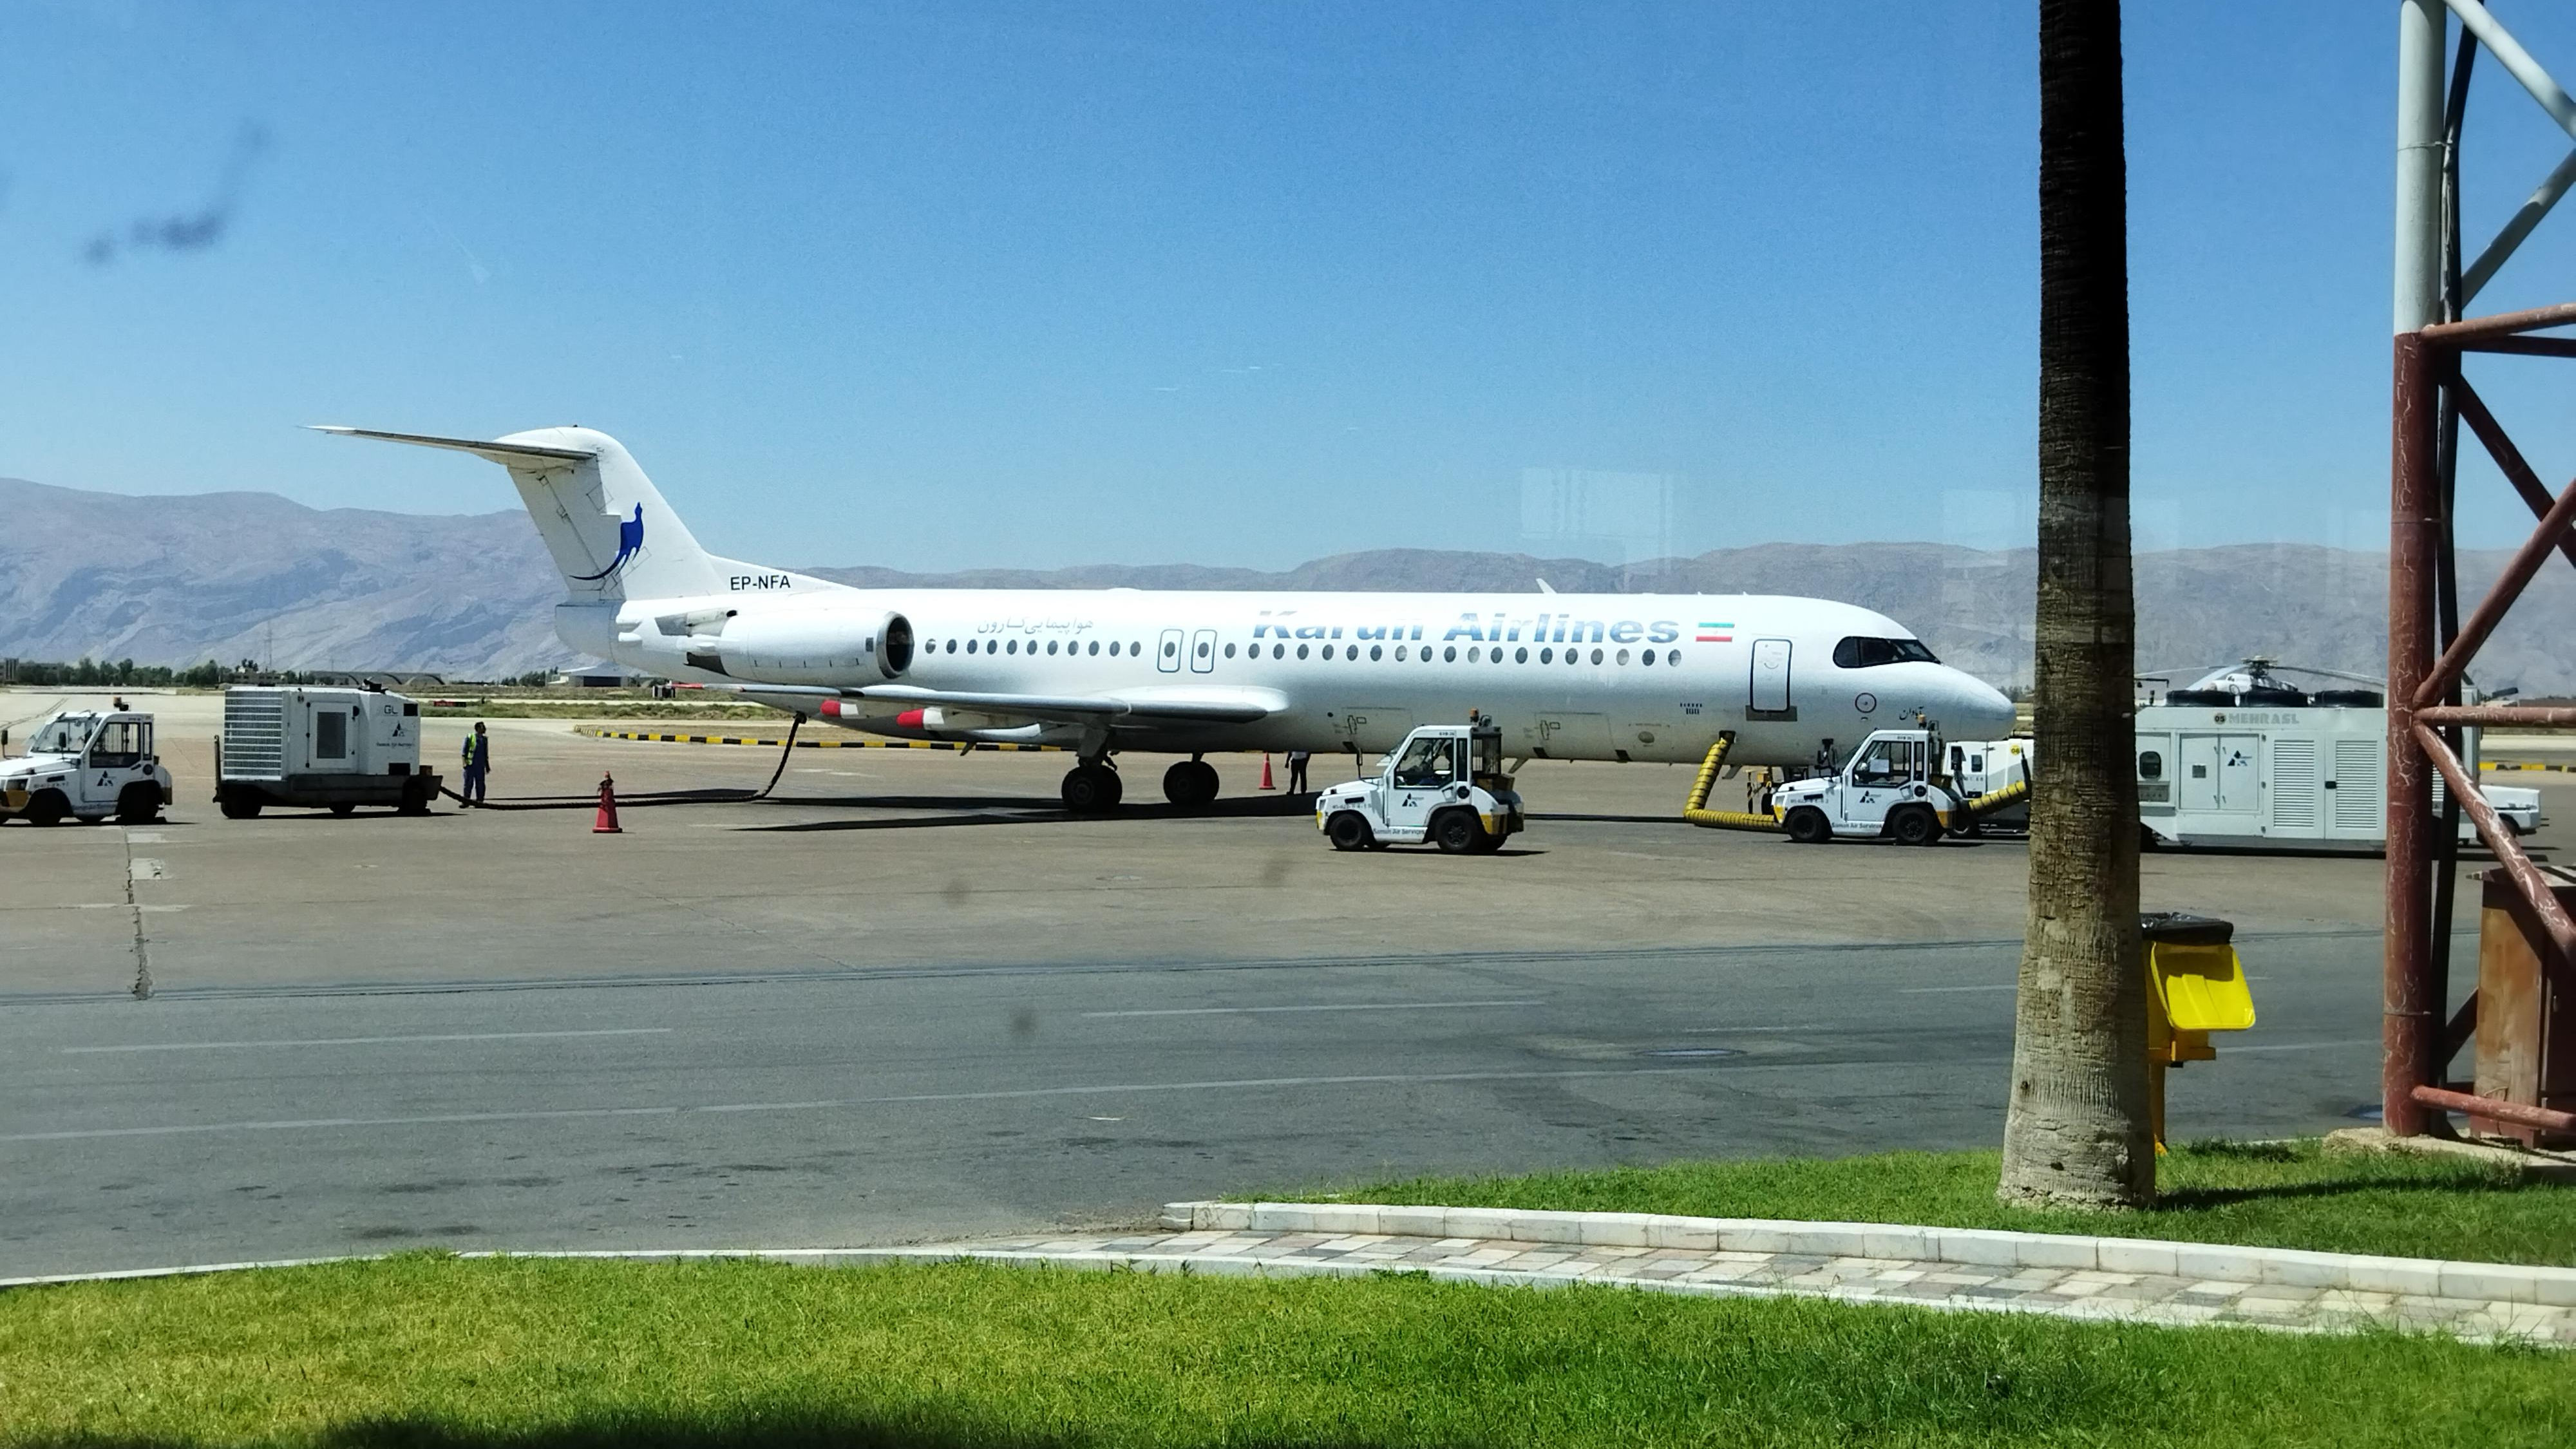 (ویدئو) نمایی دیدنی از لحظه فرود هواپیما در فرودگاه شیراز از کابین خلبان